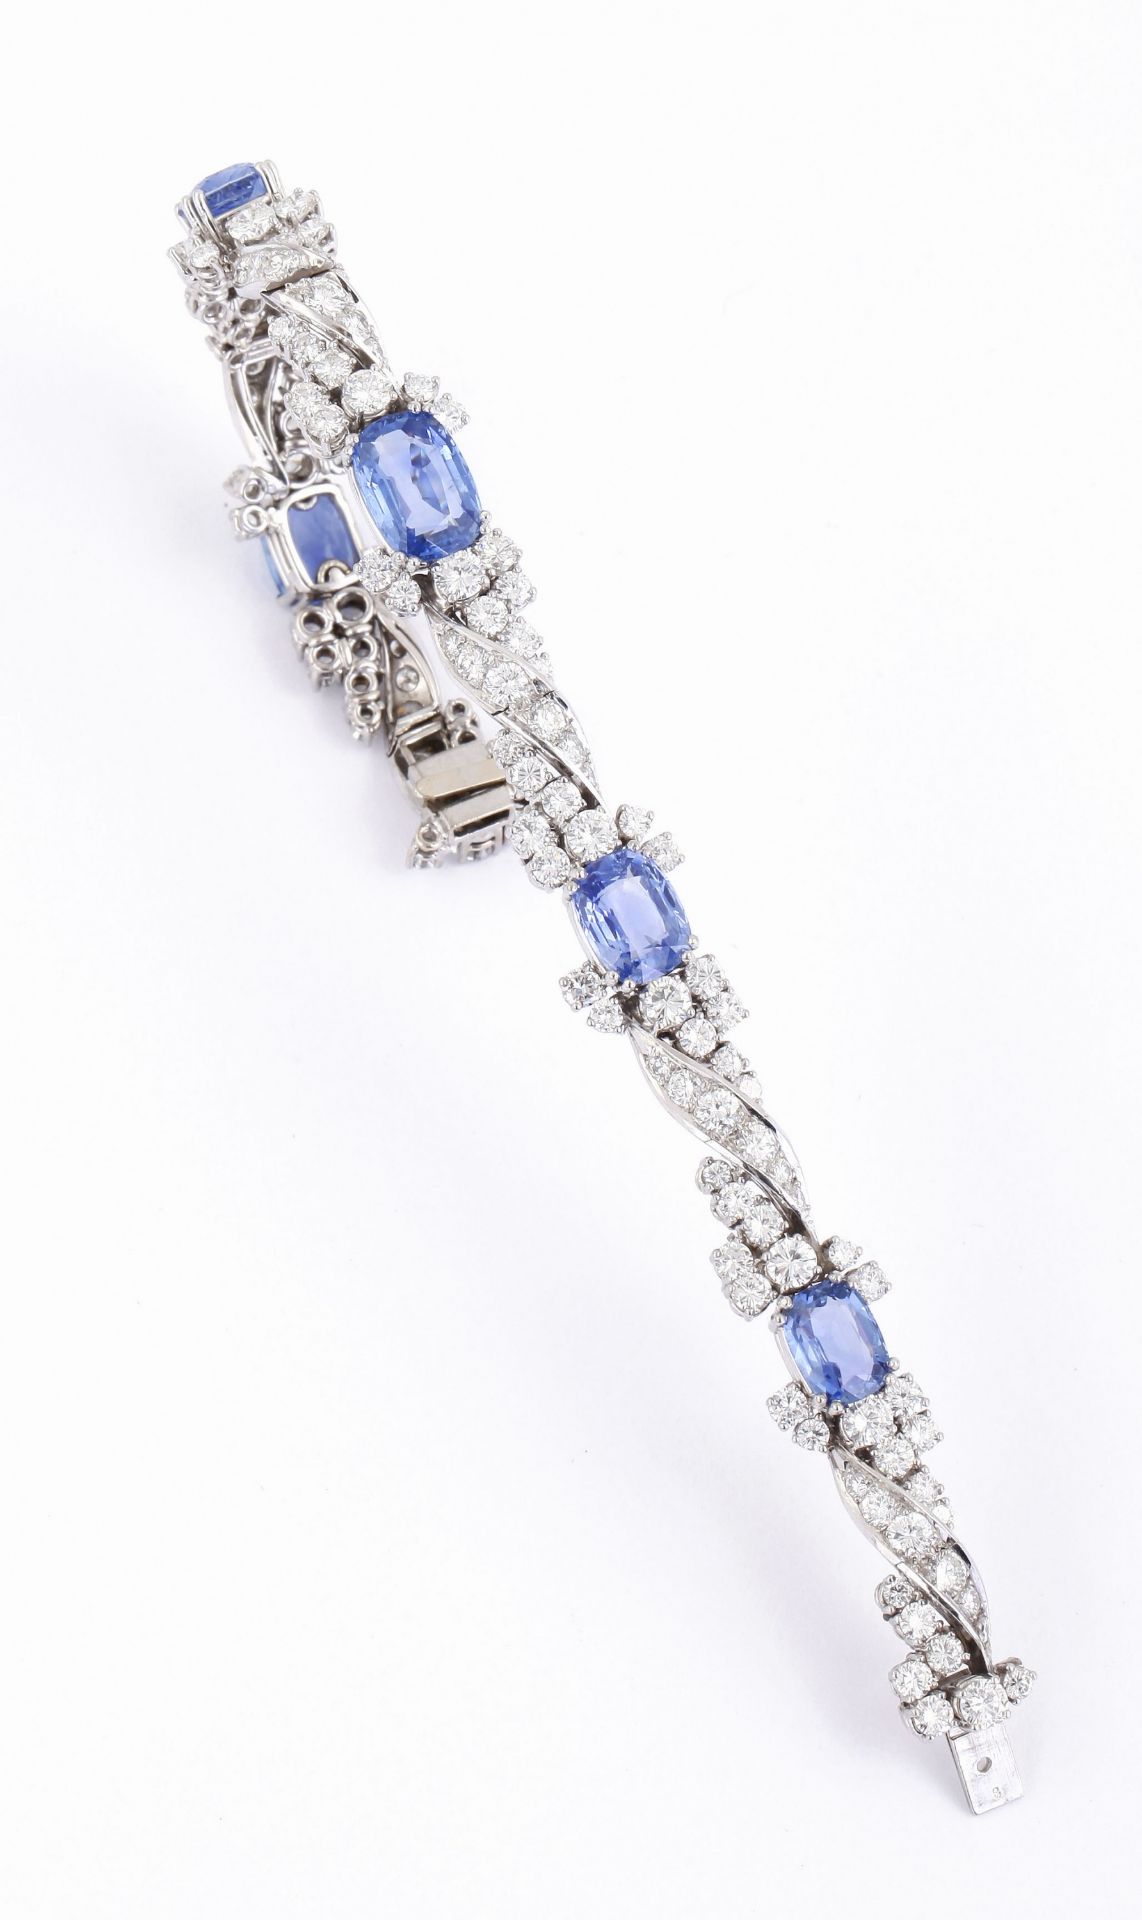 Gr. Saphir-Brillant-Armband 750/-WG, 70er Jahre Hochwertige Juwelierarbeit, floral gestaltet u.